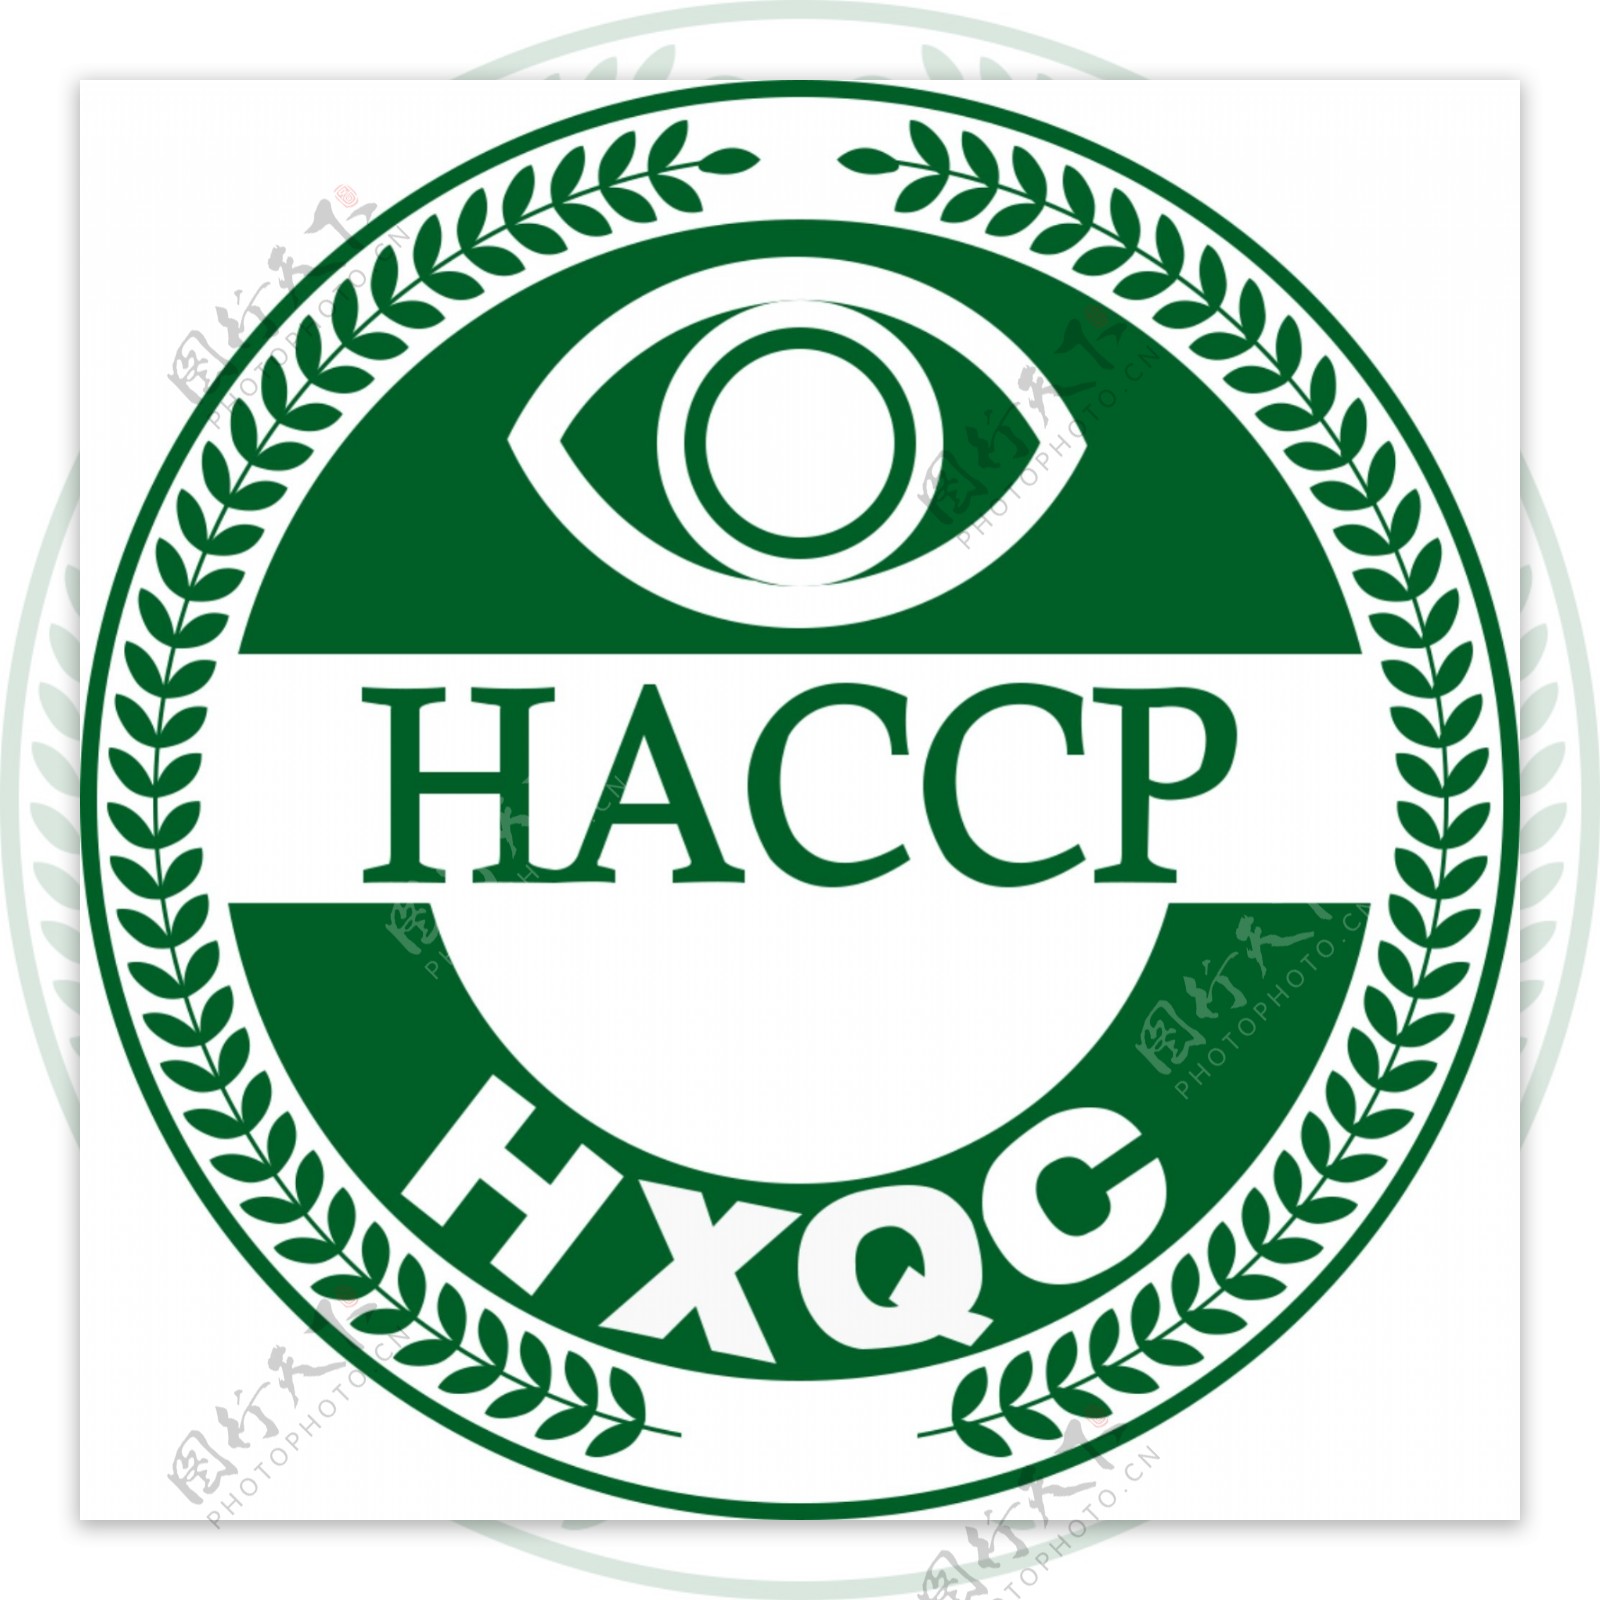 HACCP体系认证标志